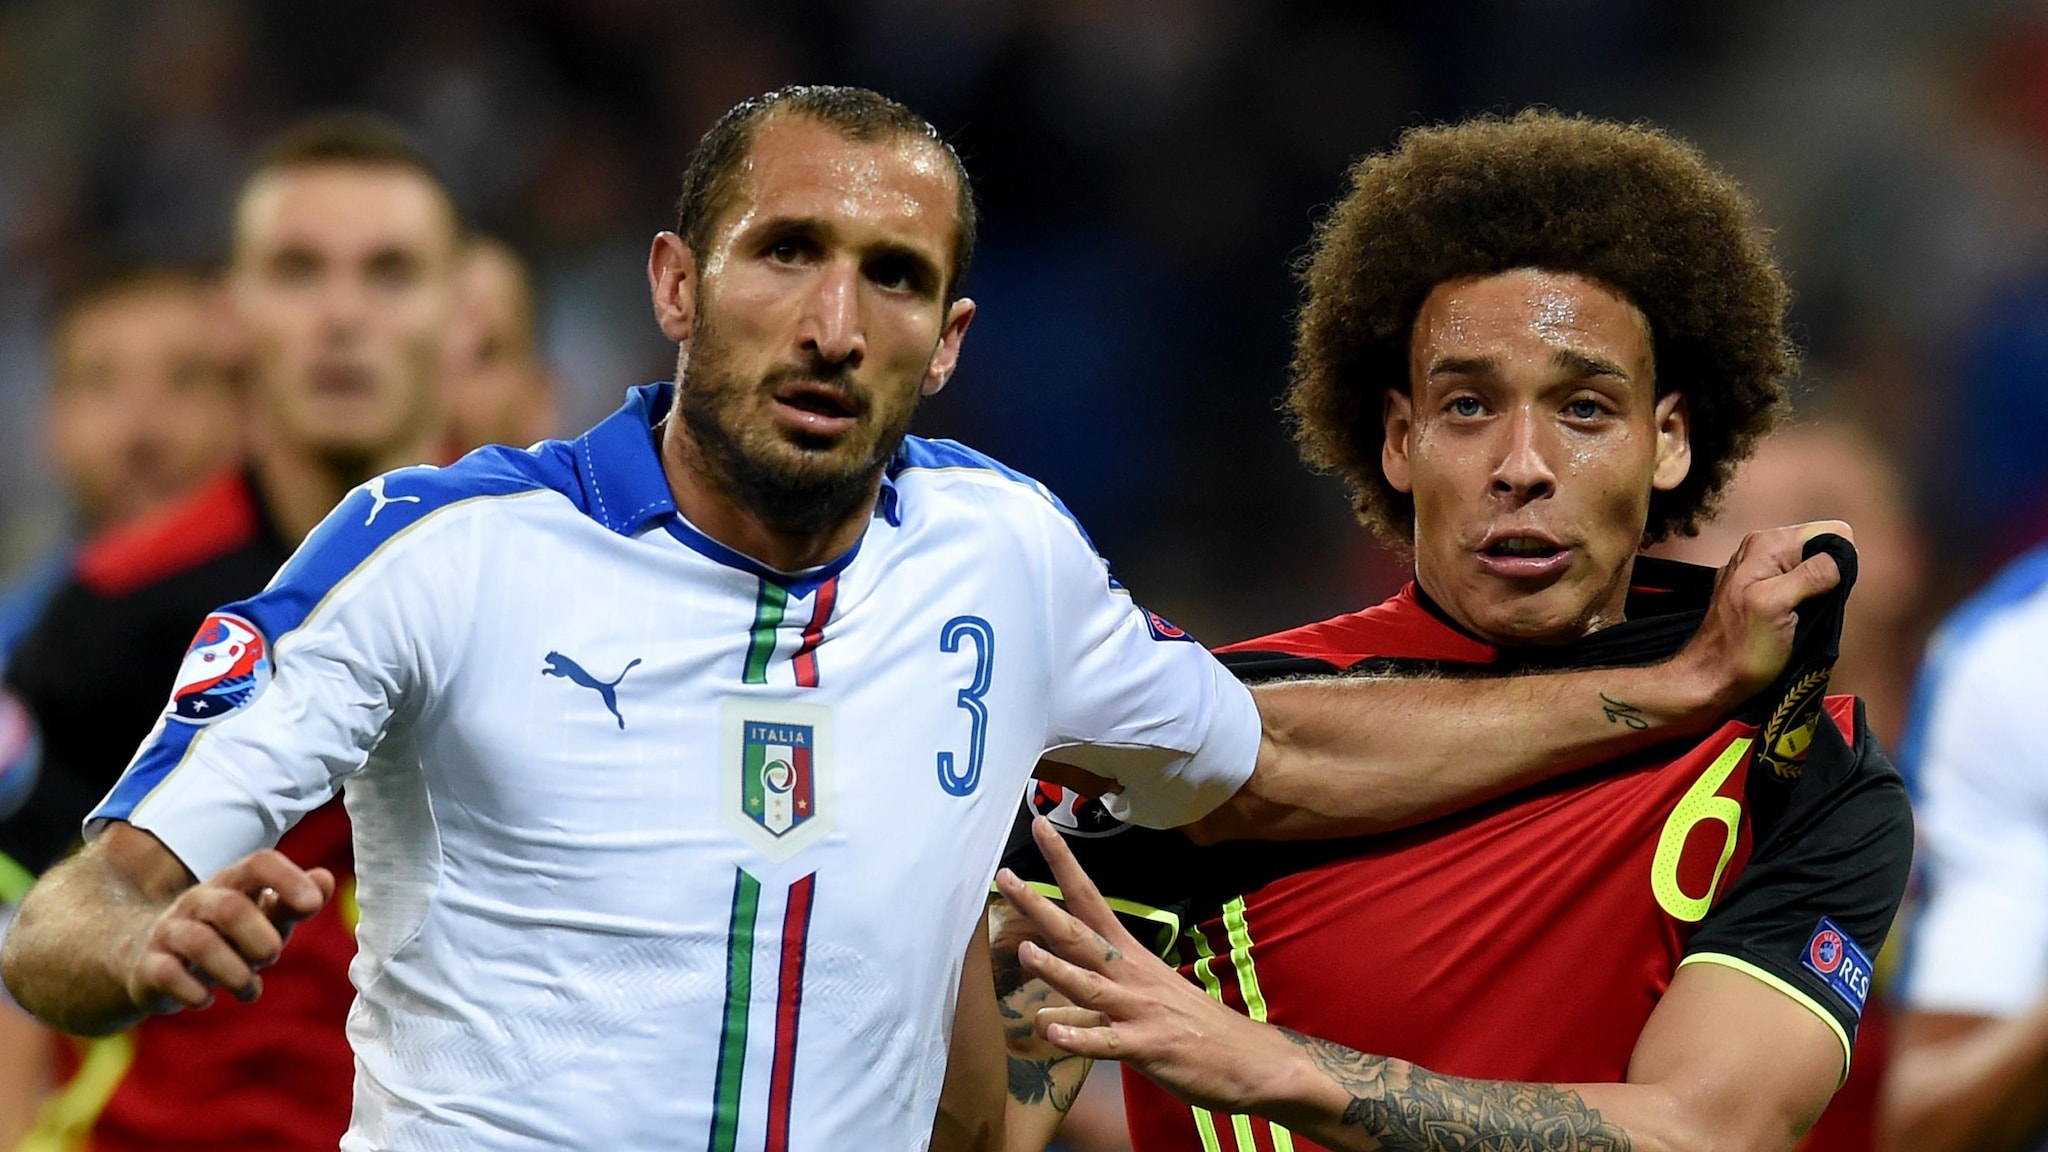 Прервет ли Бельгия победное шествие Италии? Анонс матча Бельгия - Италия